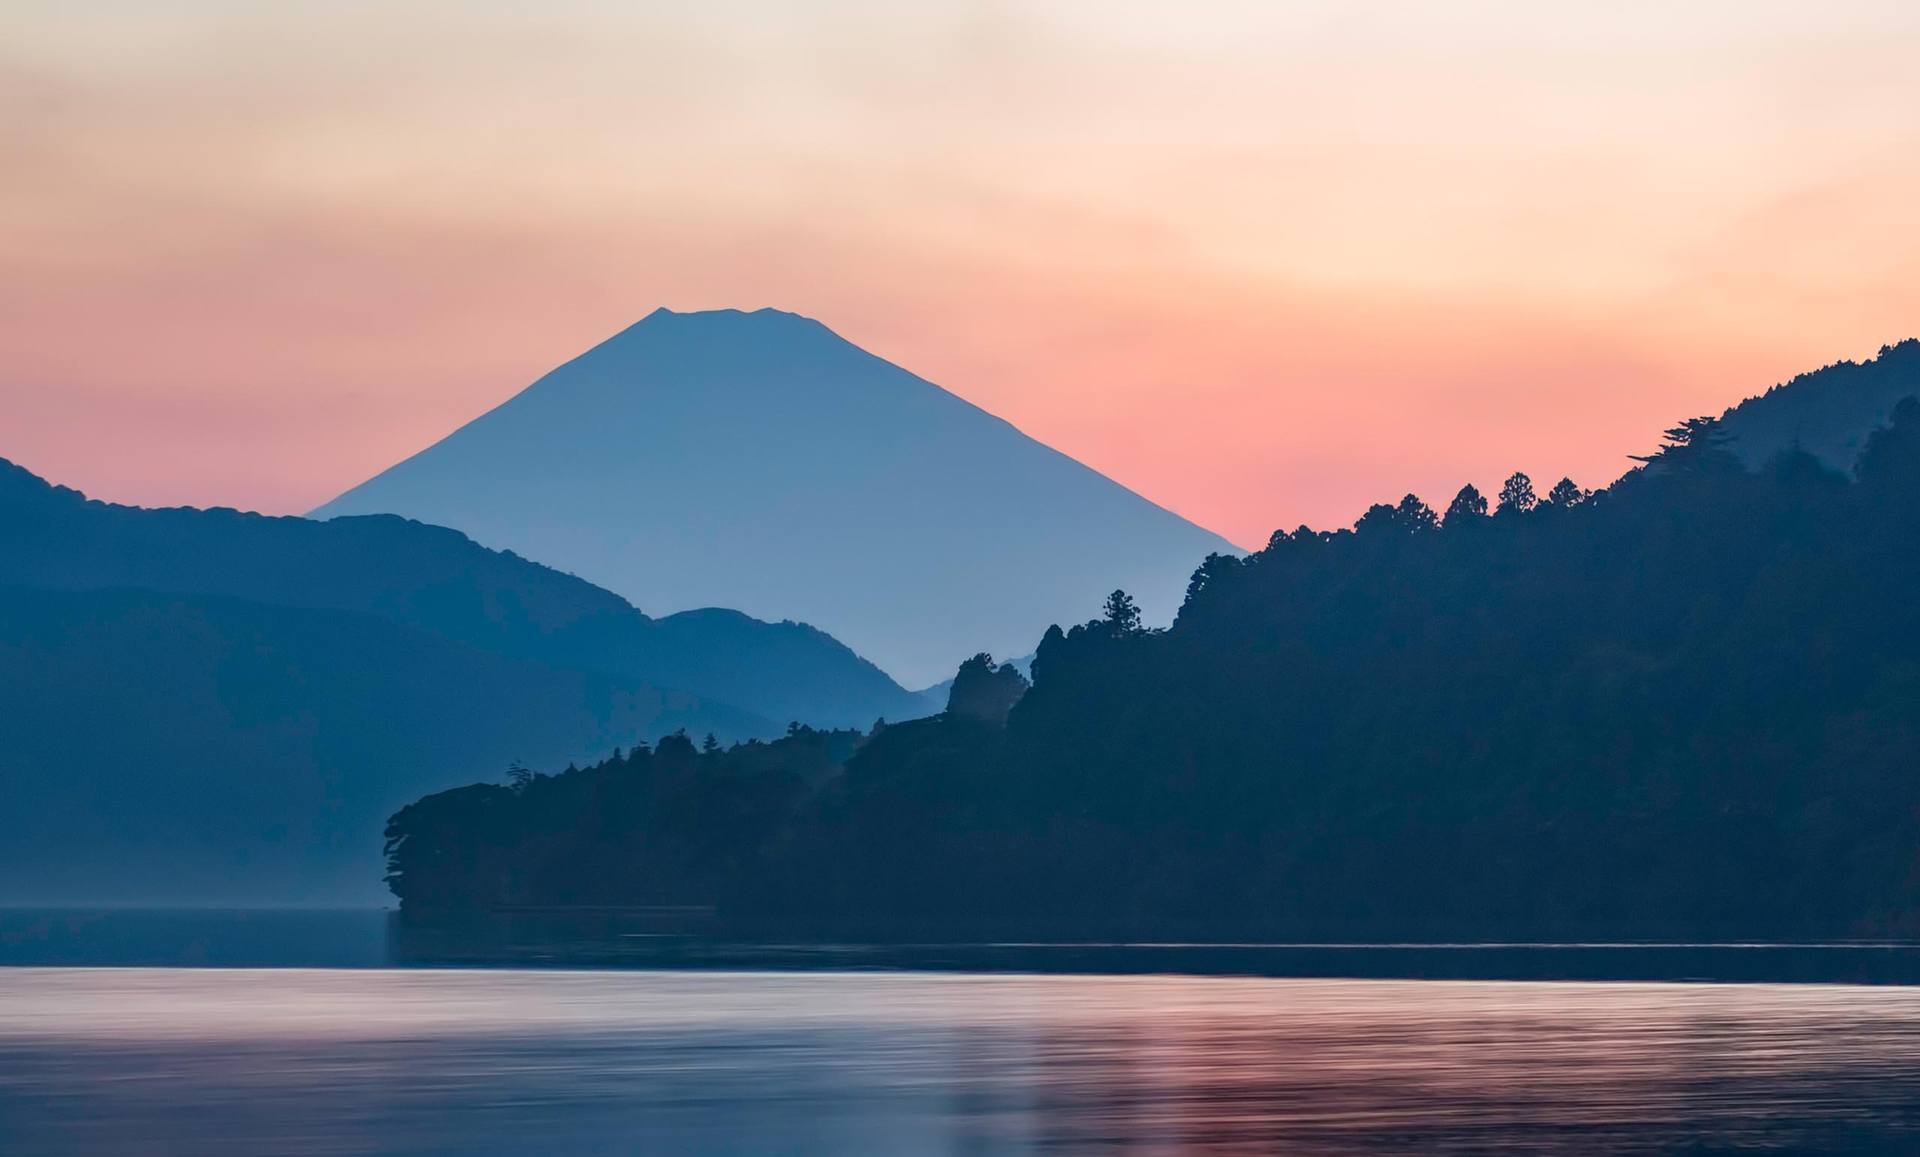 Saatchi Art: Mount Fuji From Lake Ashi At Sunset (Hakone, Japan ...